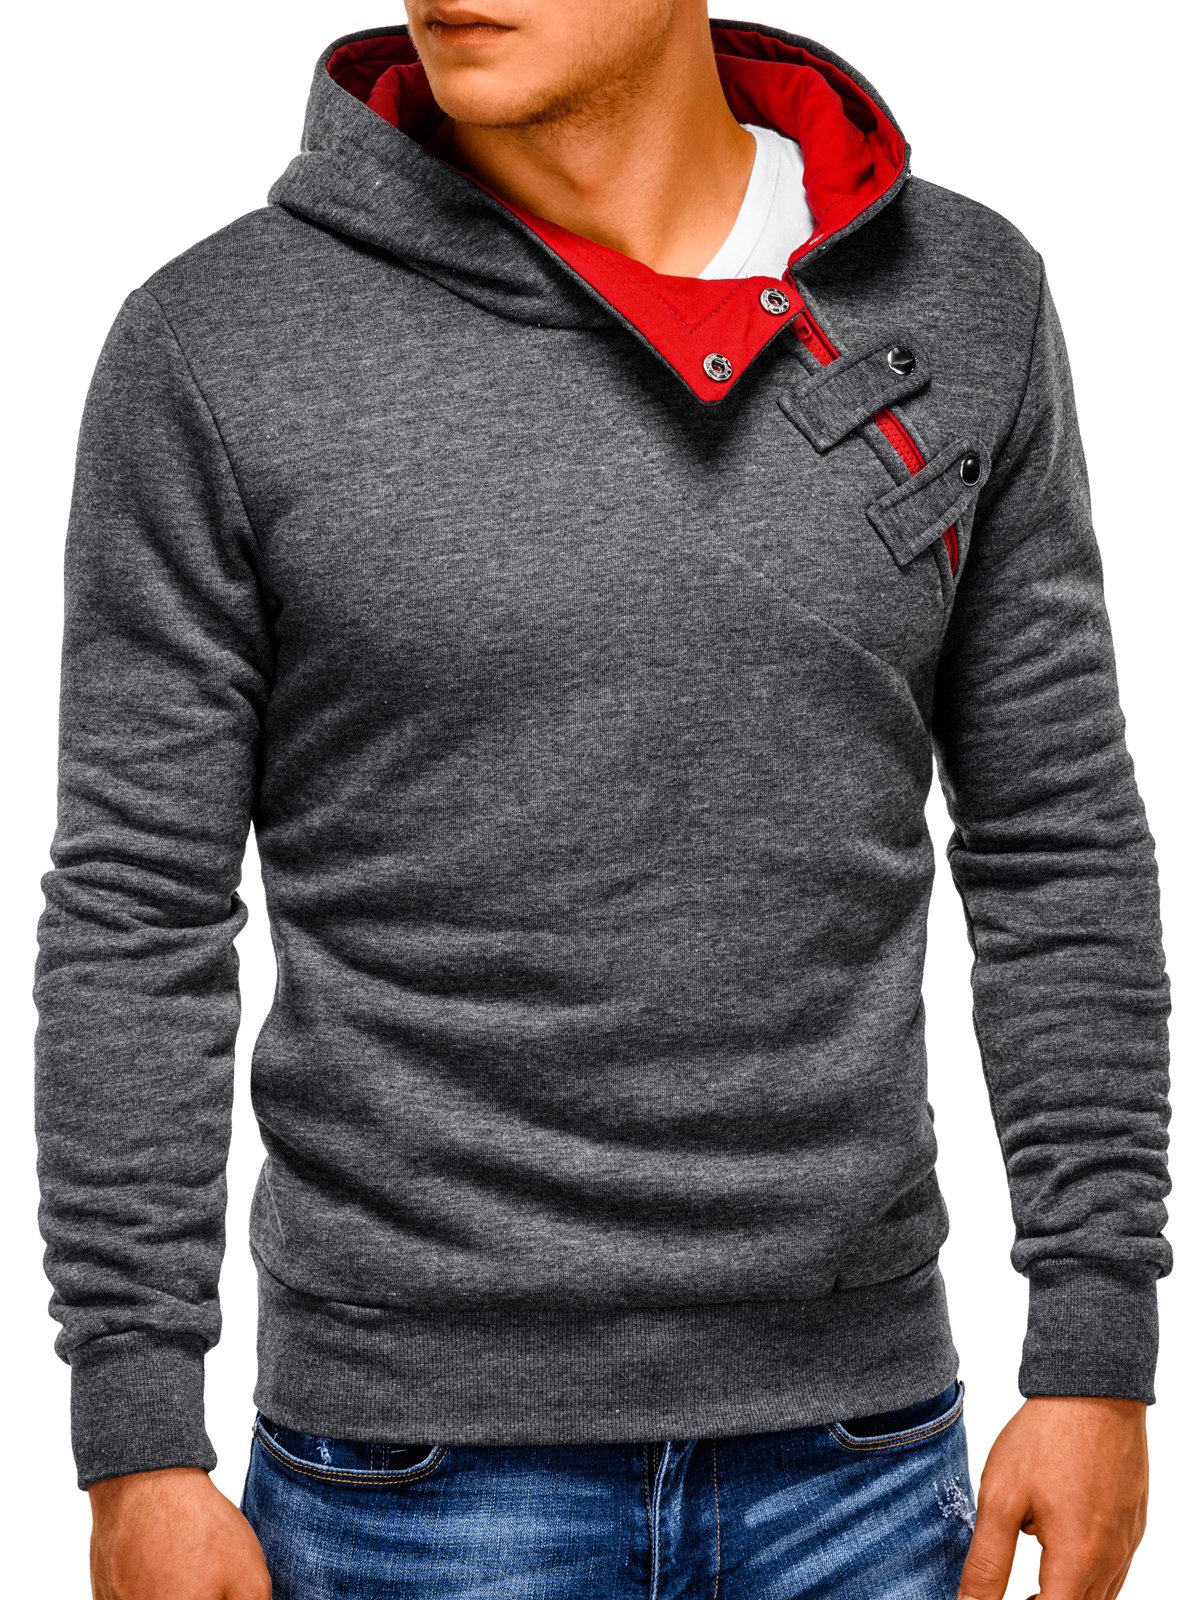 Men's hoodie PACO - dark grey/red | MODONE wholesale - Clothing For Men